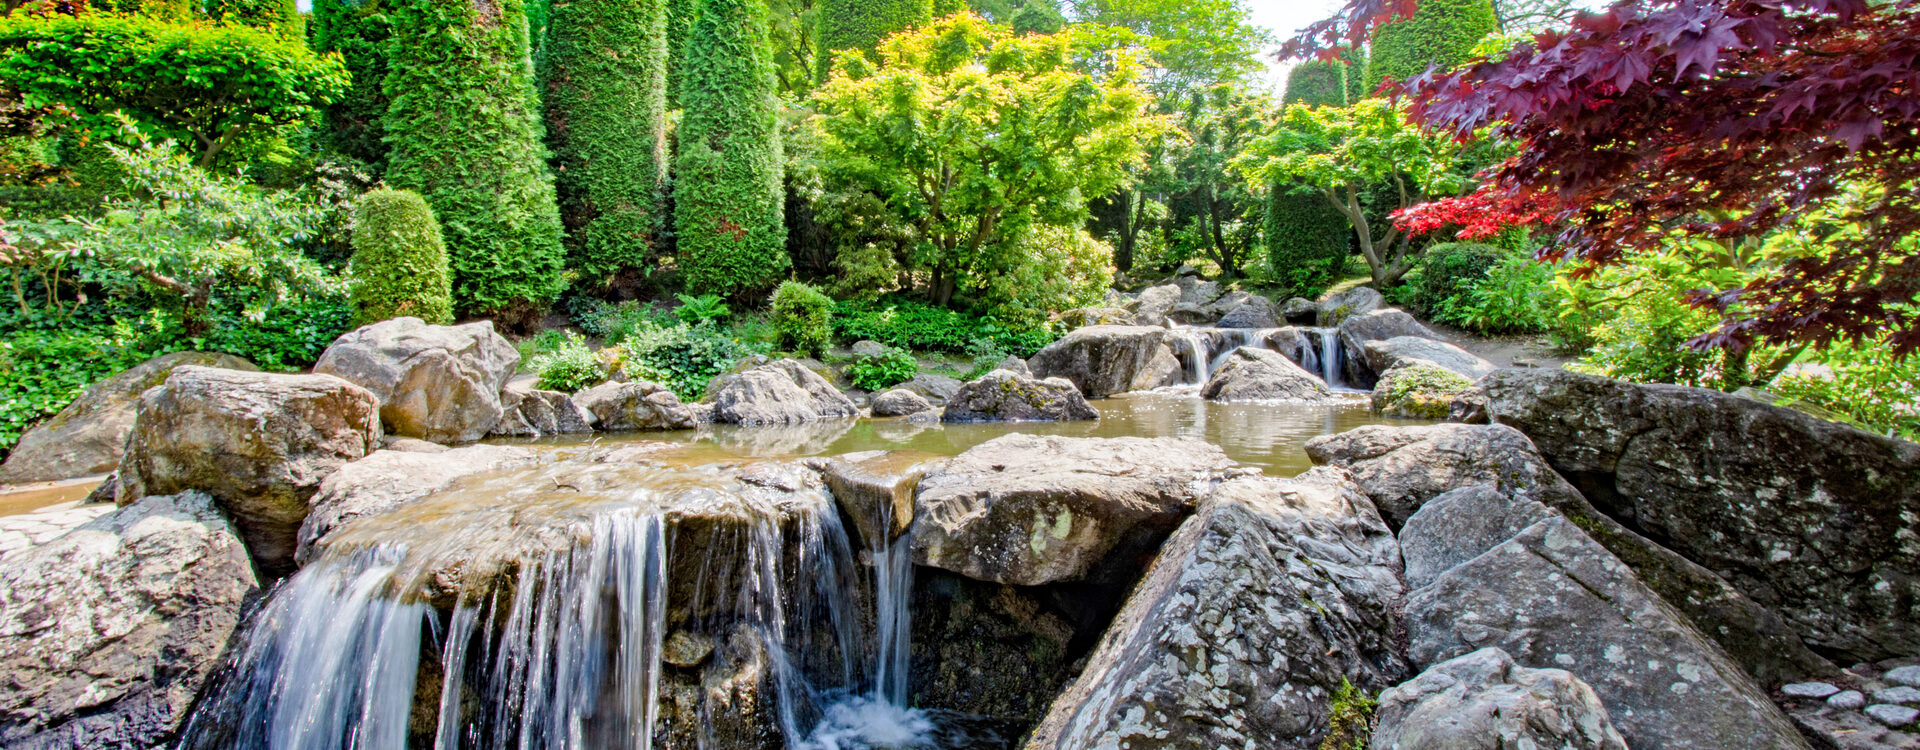 Der Japanische Garten in der Rheinaue mit Wasserfall